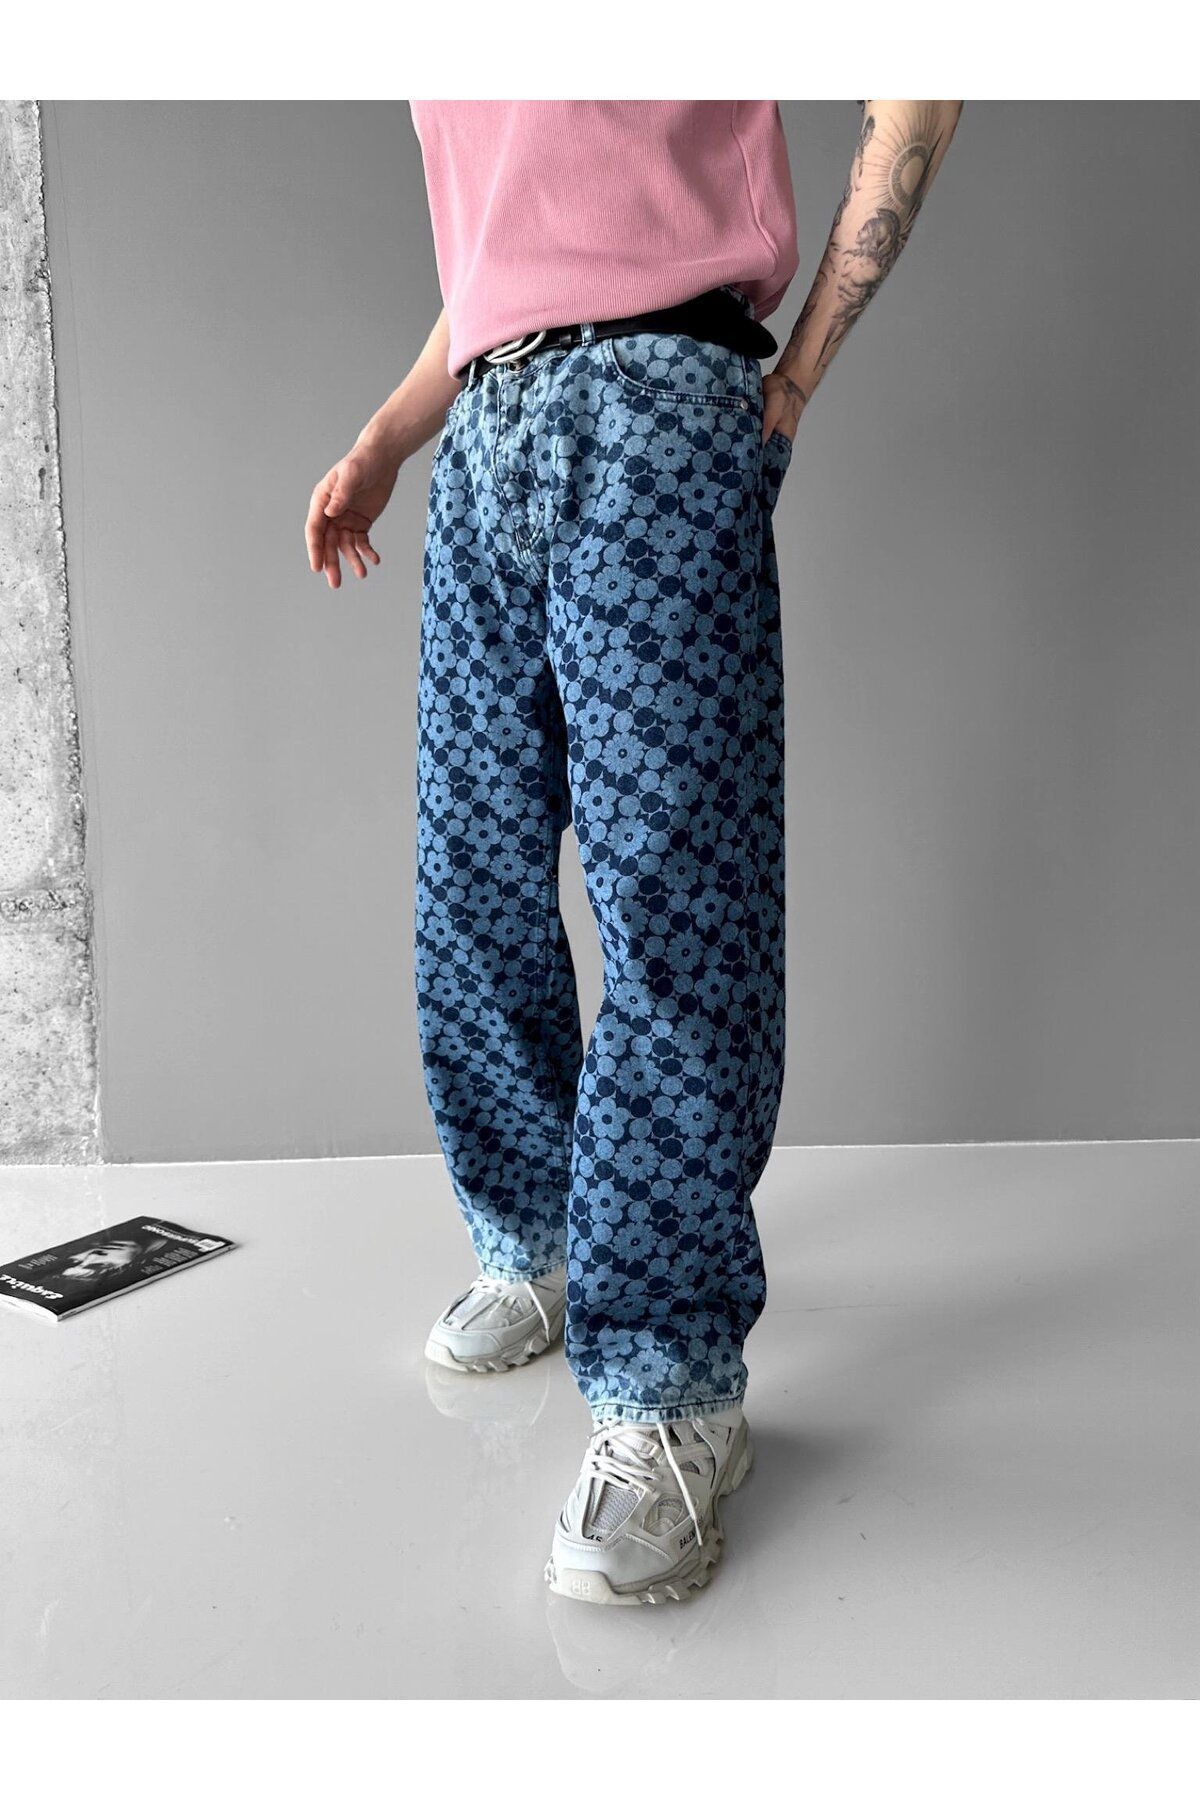 Ablukaonline Джинсовые брюки Extra Baggy Fit с лазерным принтом и цветочным узором, синие JEN.0077